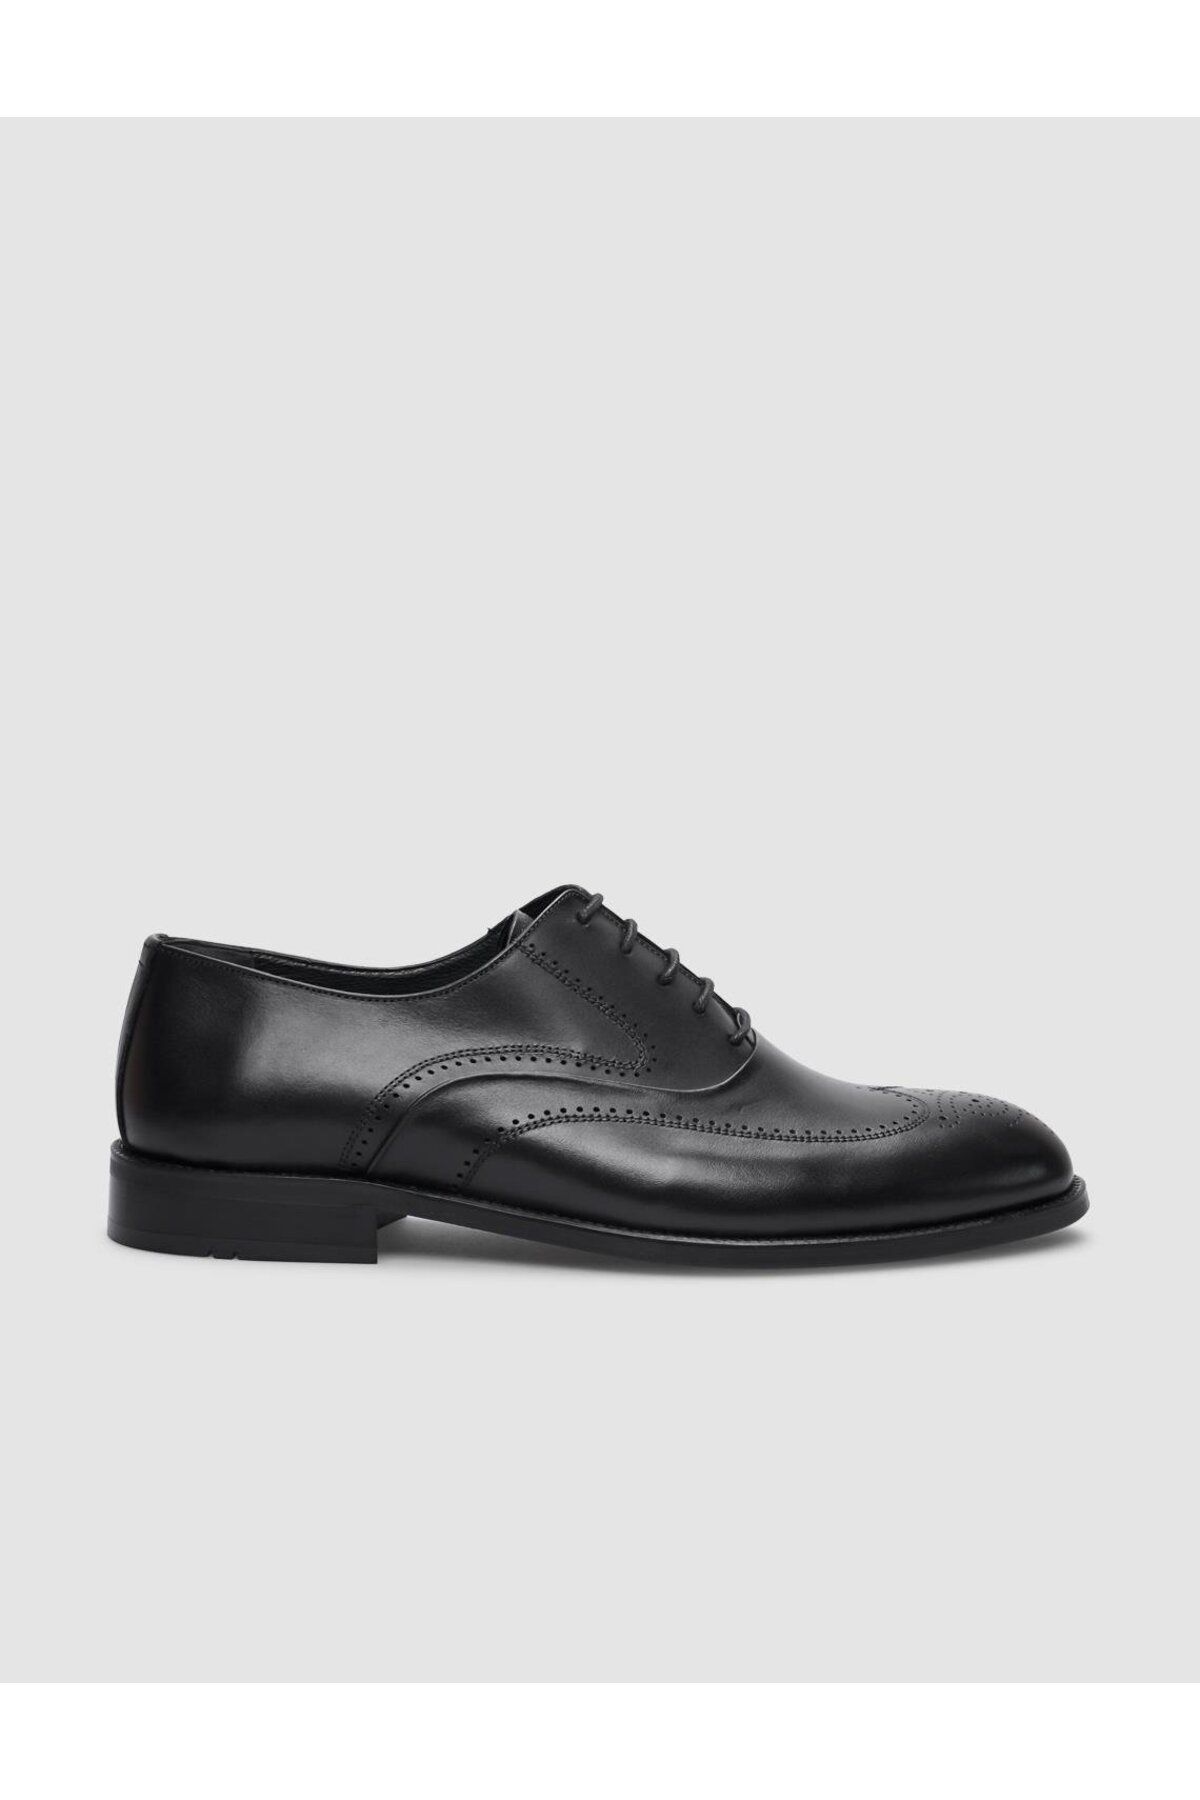 Cabani Hakiki Deri Siyah Bağcıklı Erkek Klasik Ayakkabı